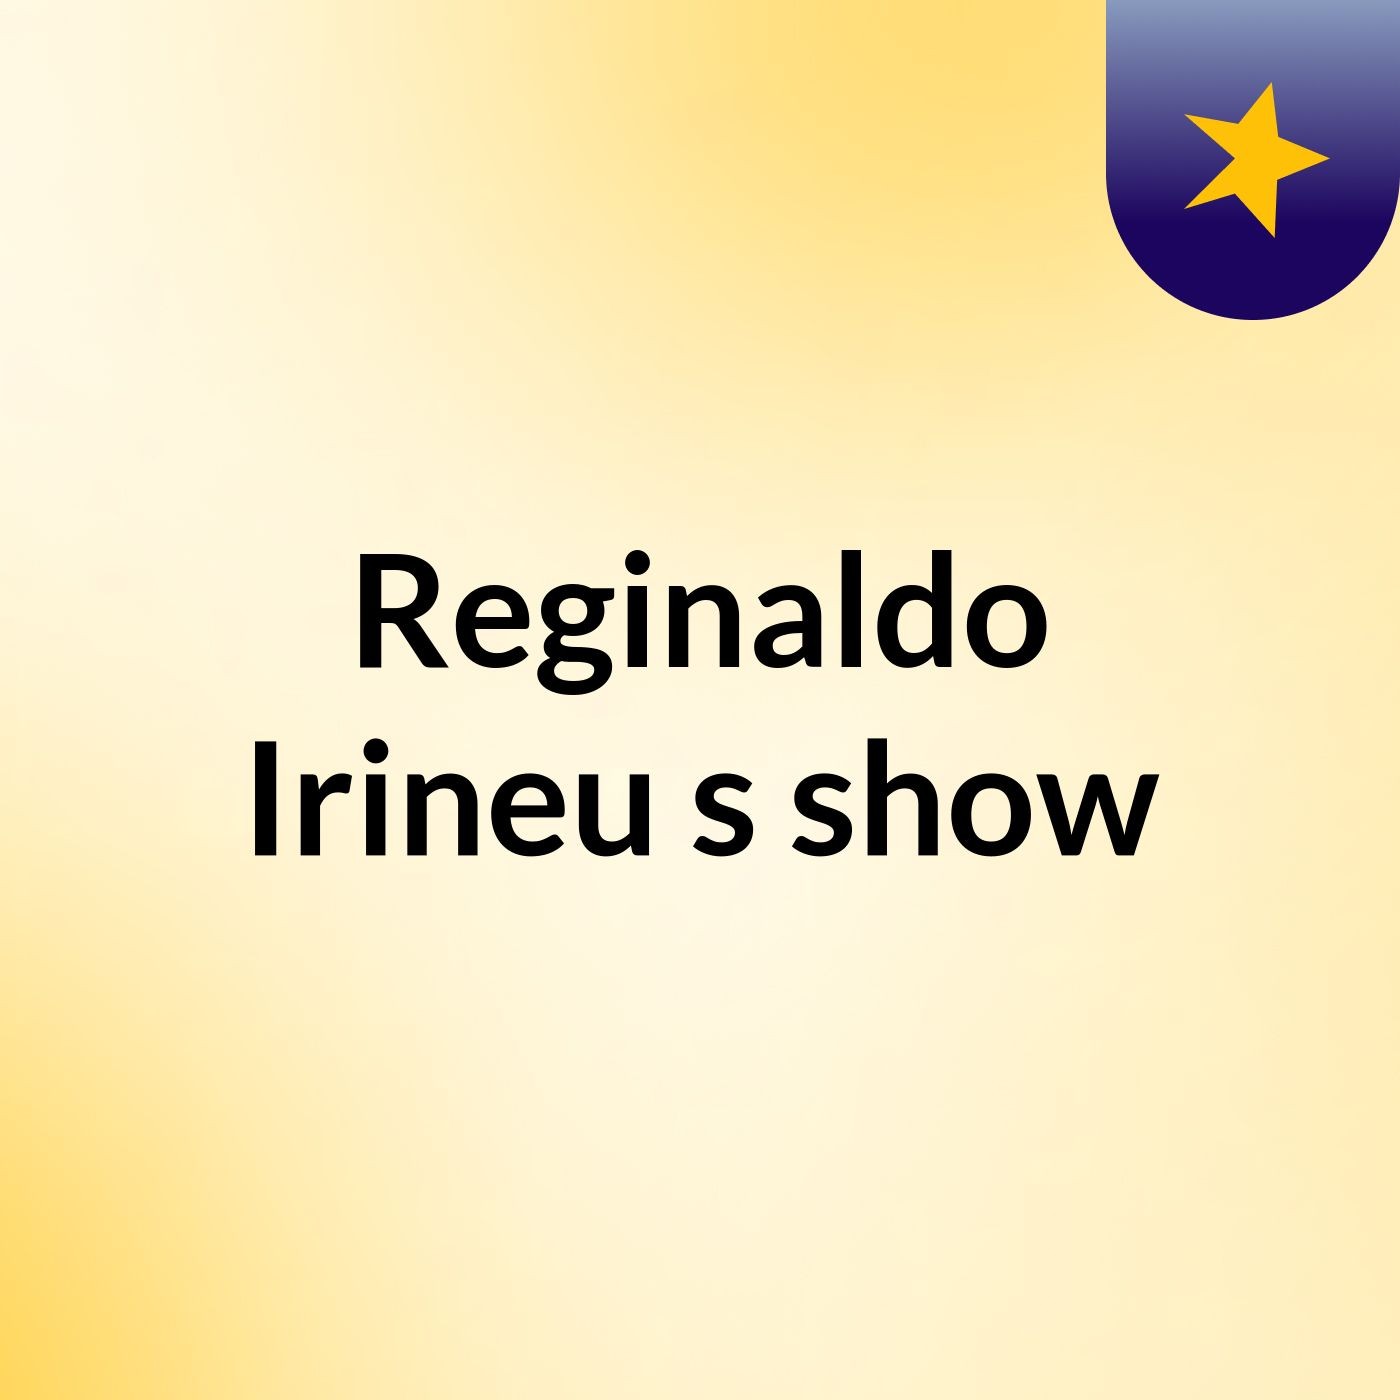 Reginaldo Irineu's show